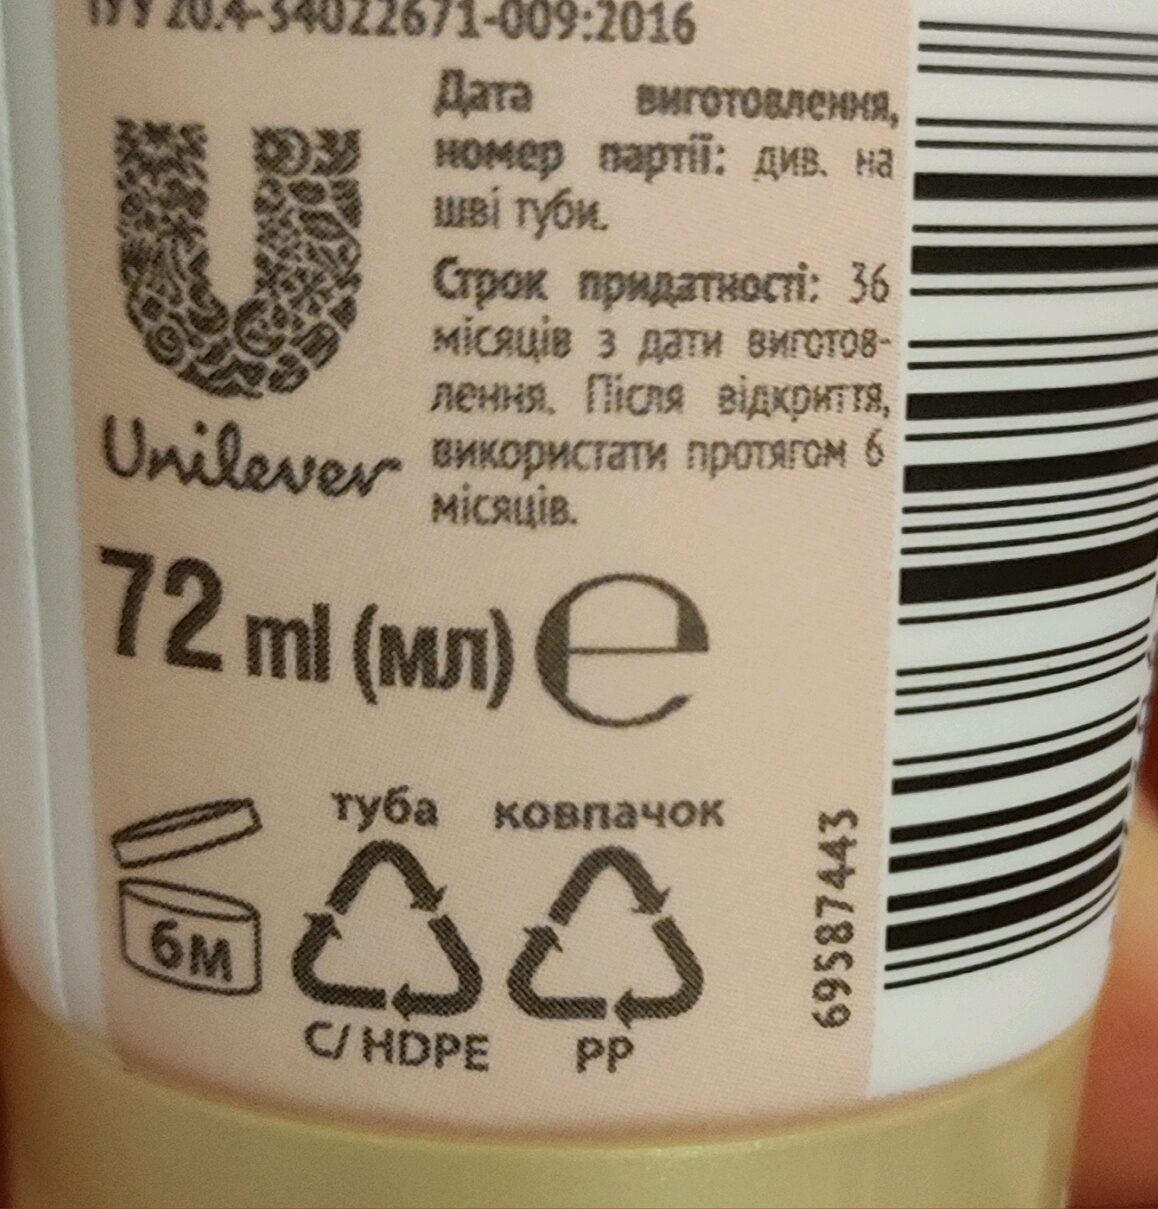  - Instruction de recyclage et/ou information d'emballage - ru